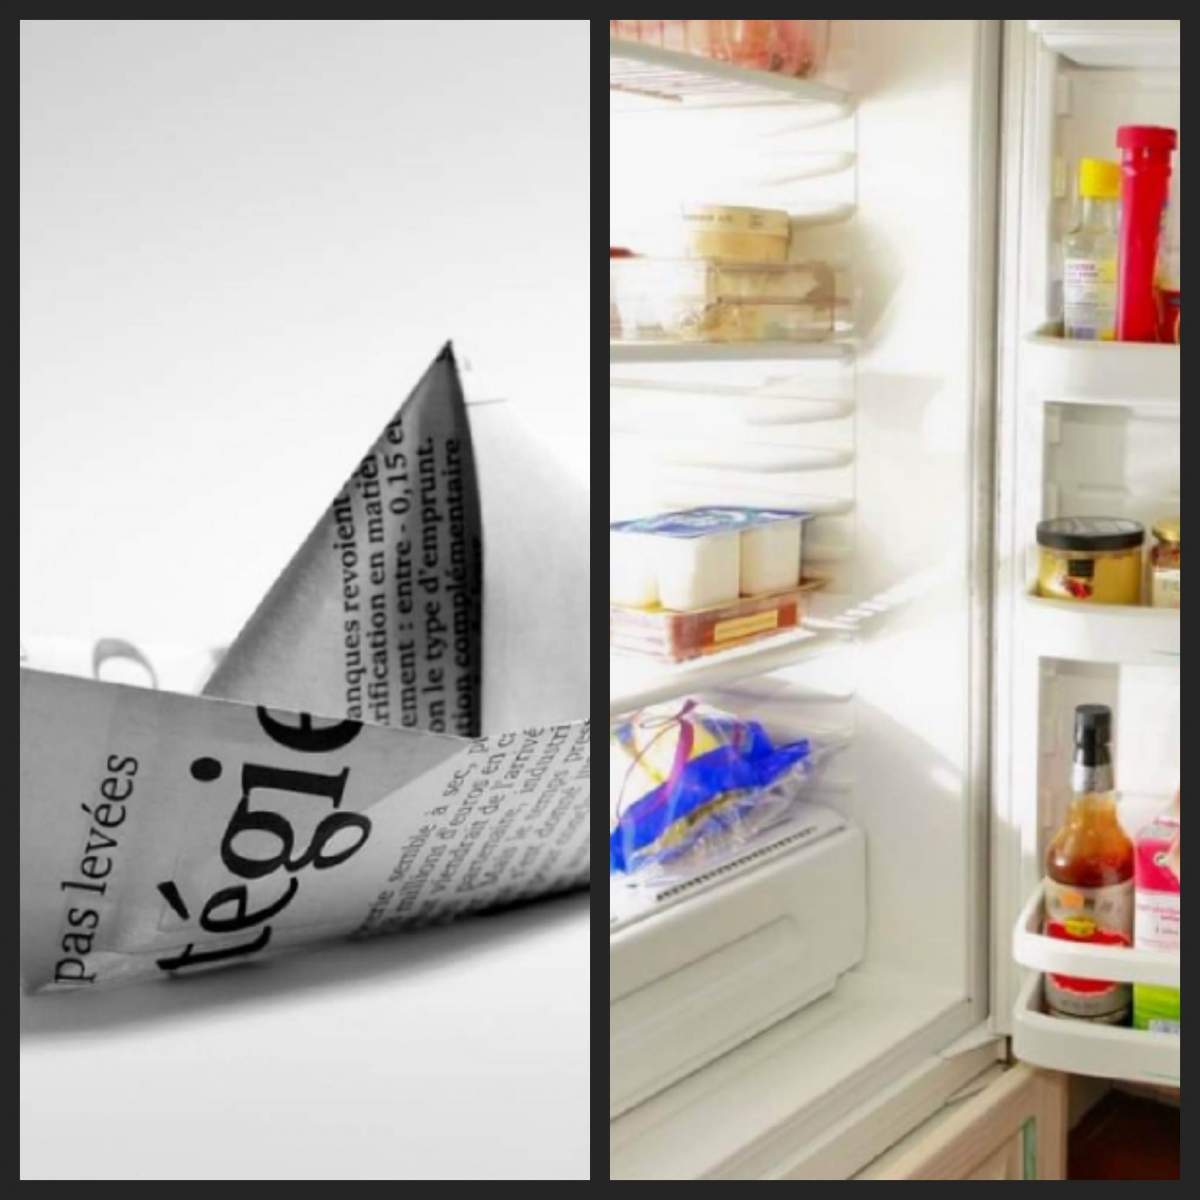 Ziar în frigider